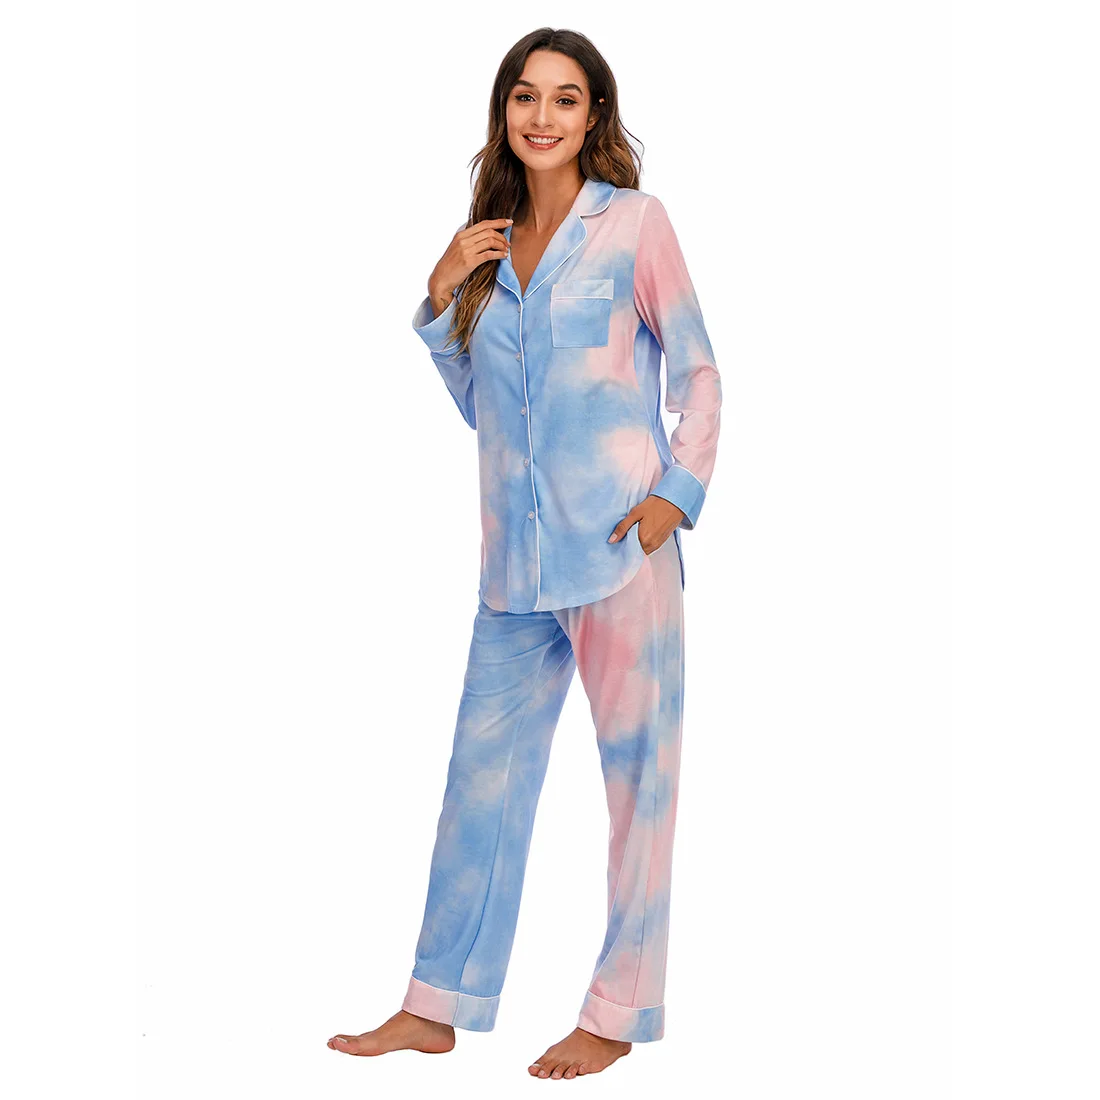 New design silk sets plus size womens satin pyjamas woman night sexy ladies winter pajama women sleepwear pajamas set